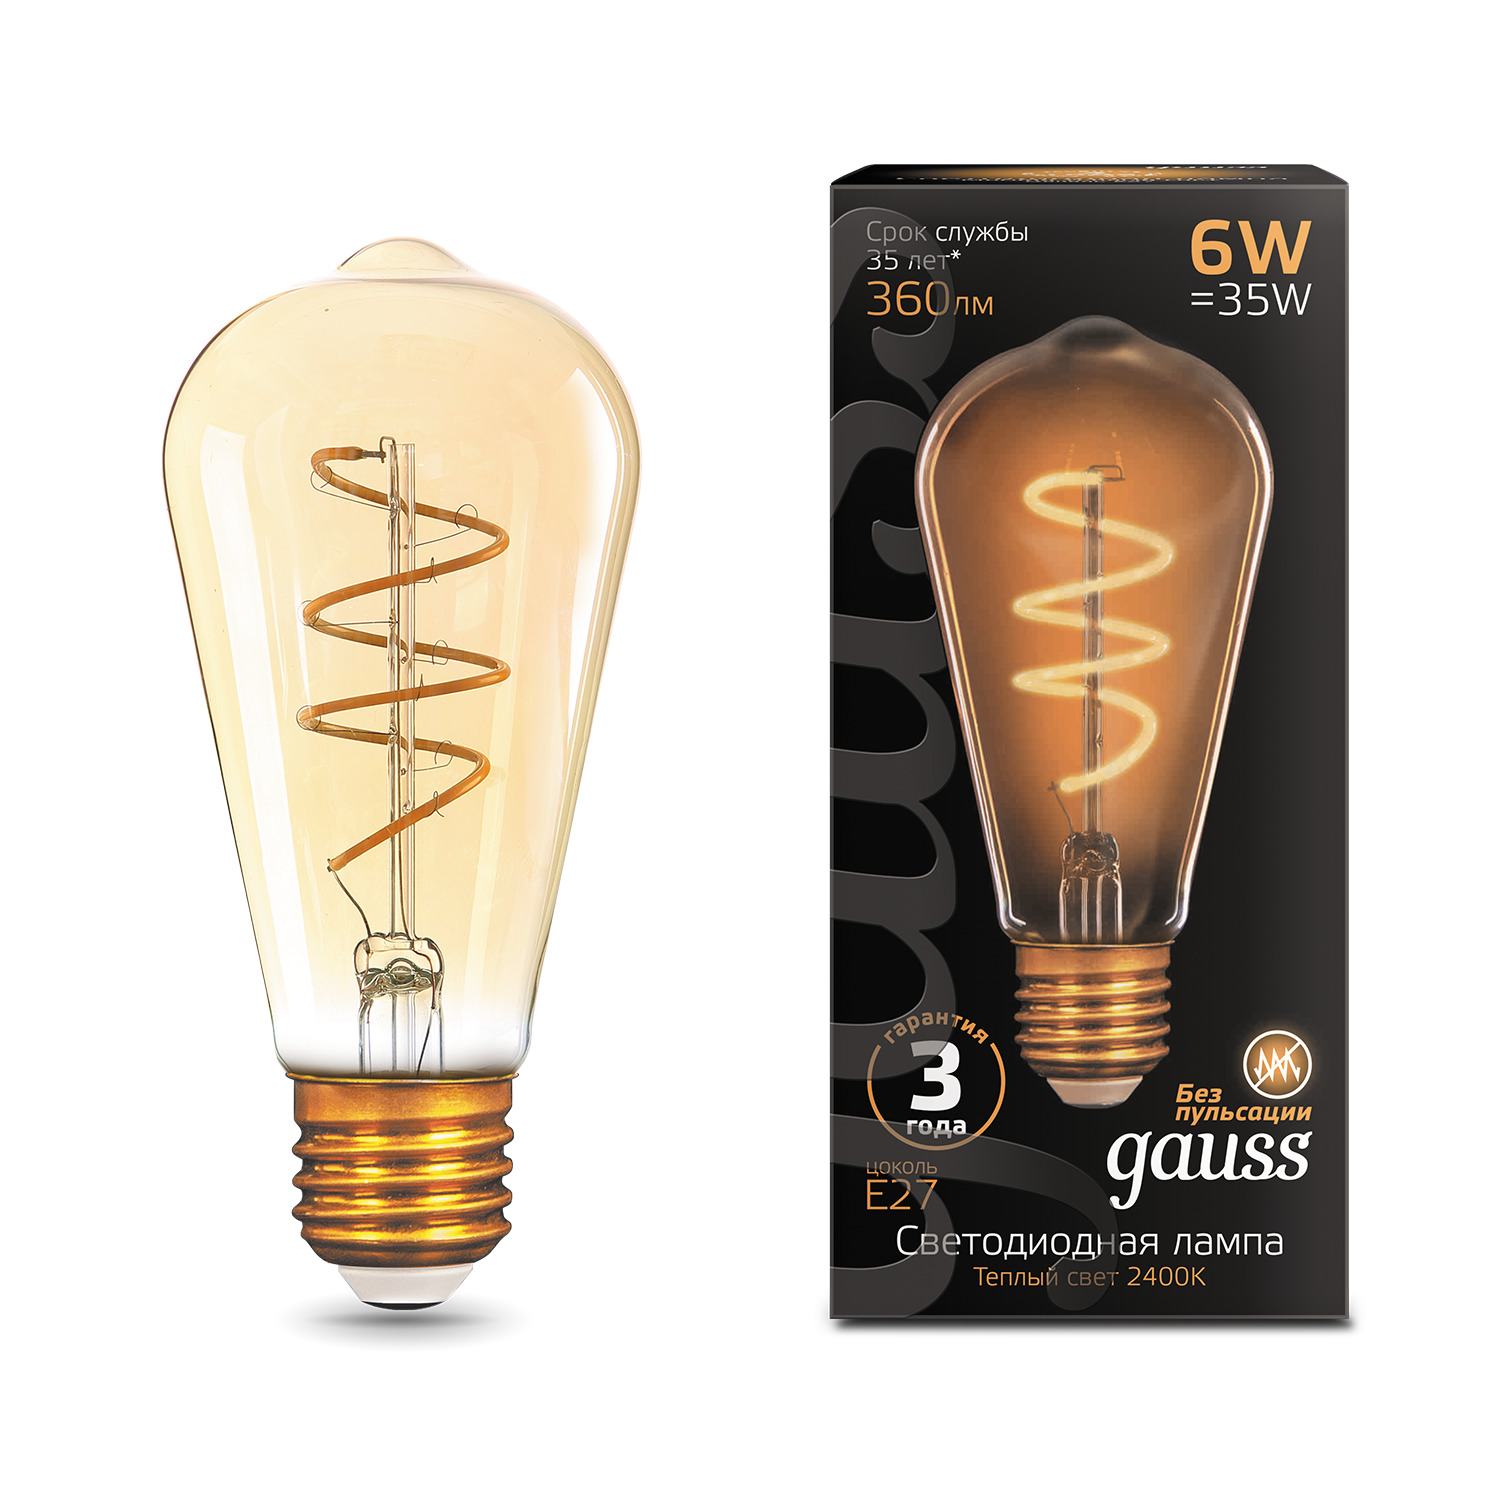 Лампа Gauss LED Filament ST64 Flexible E27 6W Golden 360lm 2400К 1/10/40 светильники gauss лампа filament led диммируемаяgolden е27 g95 6w 620lm 2400к